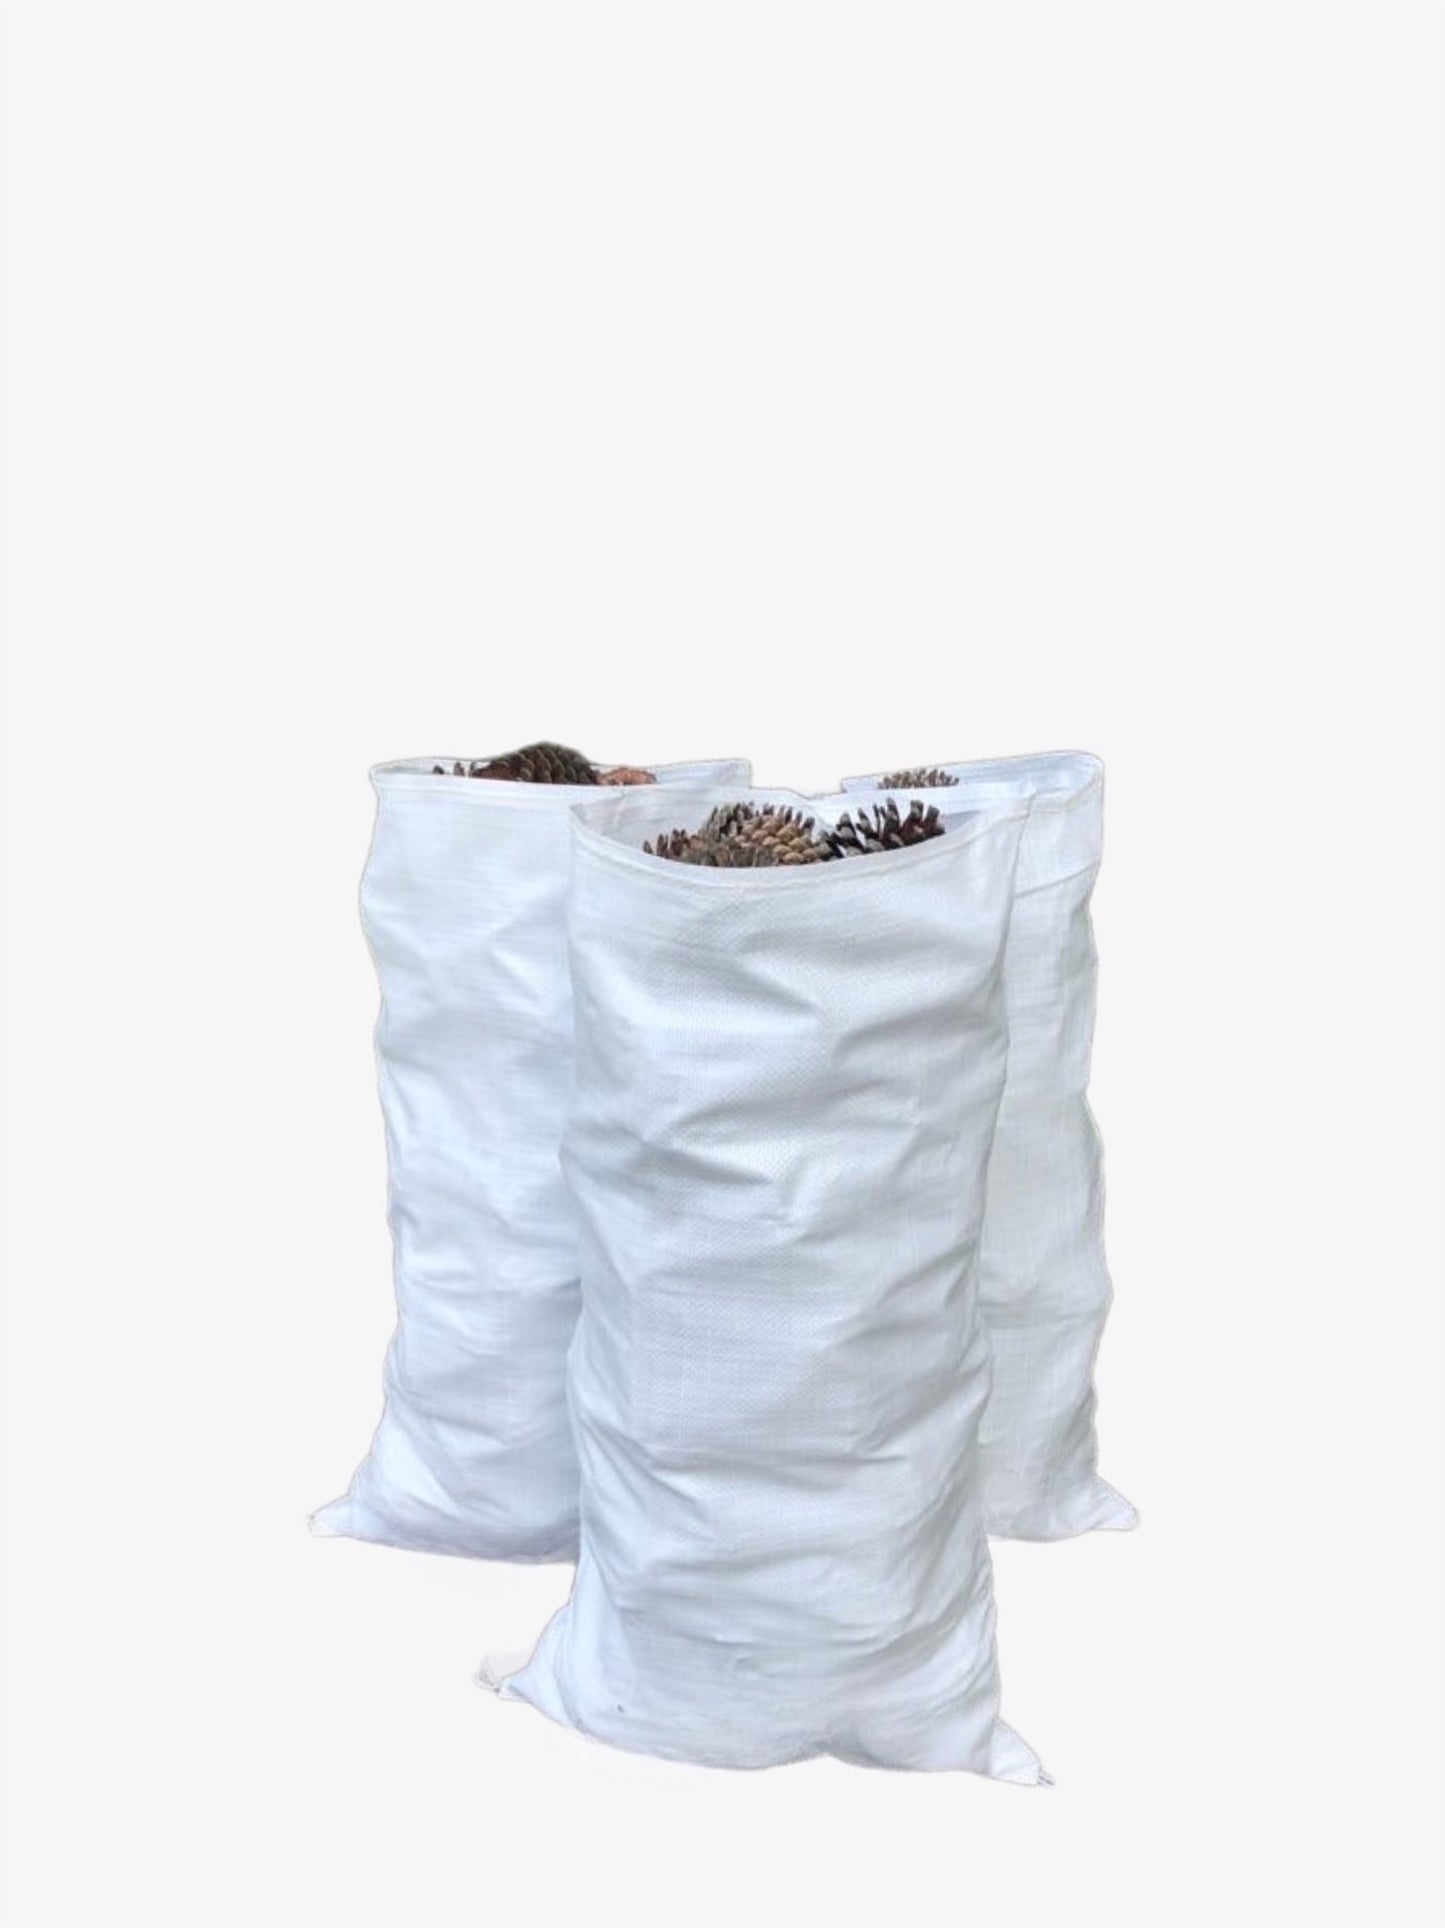 Polypropylene Sacks | Sand Bags | 470mm x 800mm | 100 Sacks | White